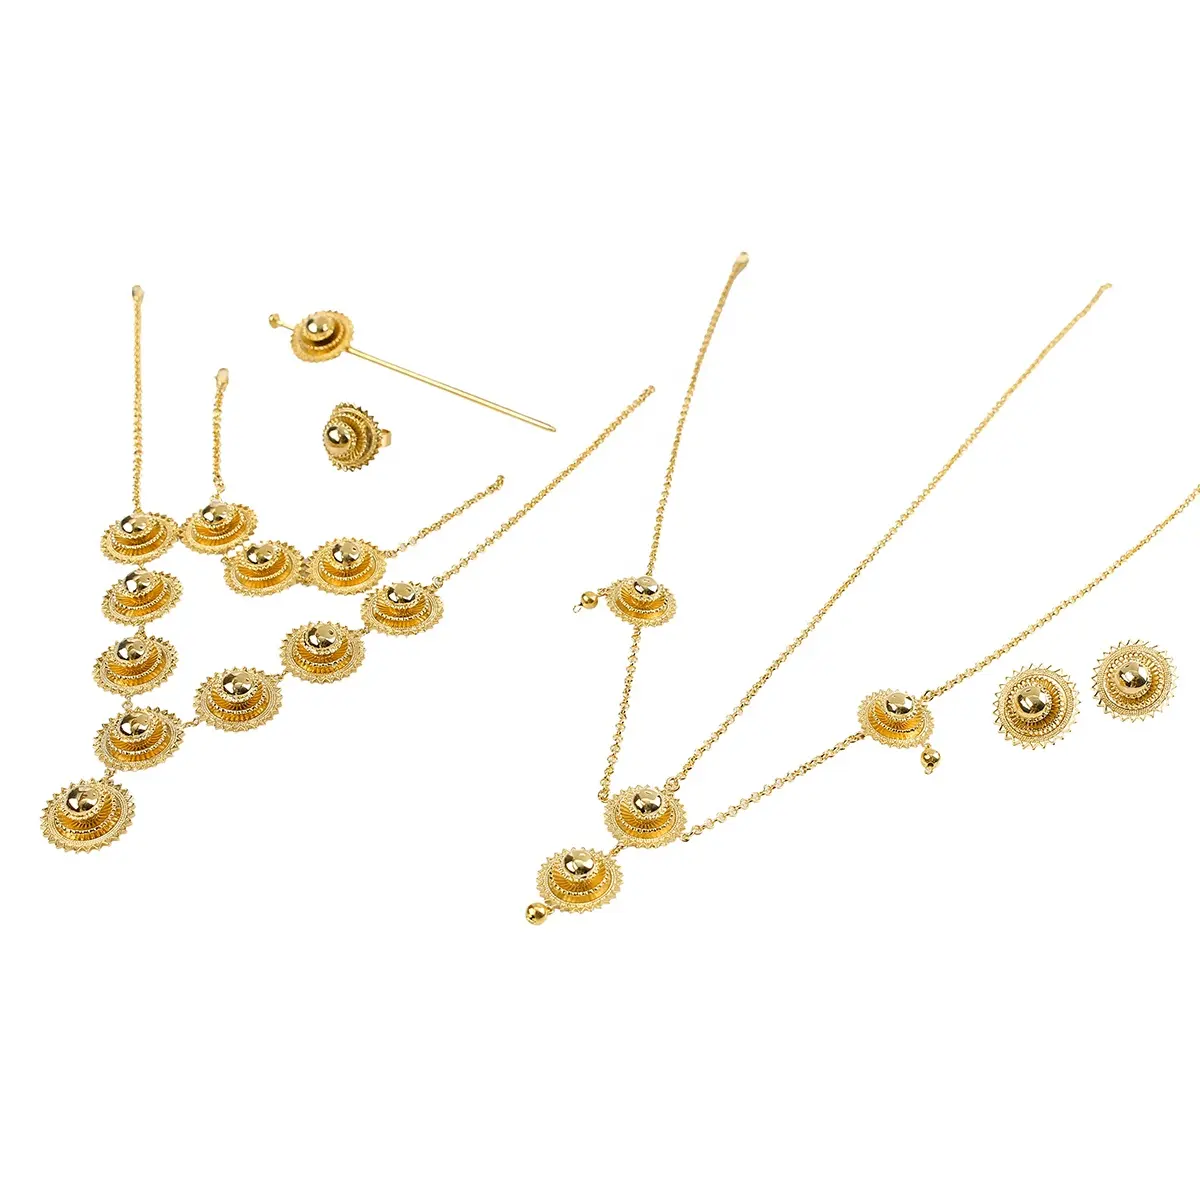 Conjunto de joias de cabelo ethiopia, conjunto de joias de 22k cor dourada em 6 peças africano, etiopia, melhores presentes de joias para mulheres